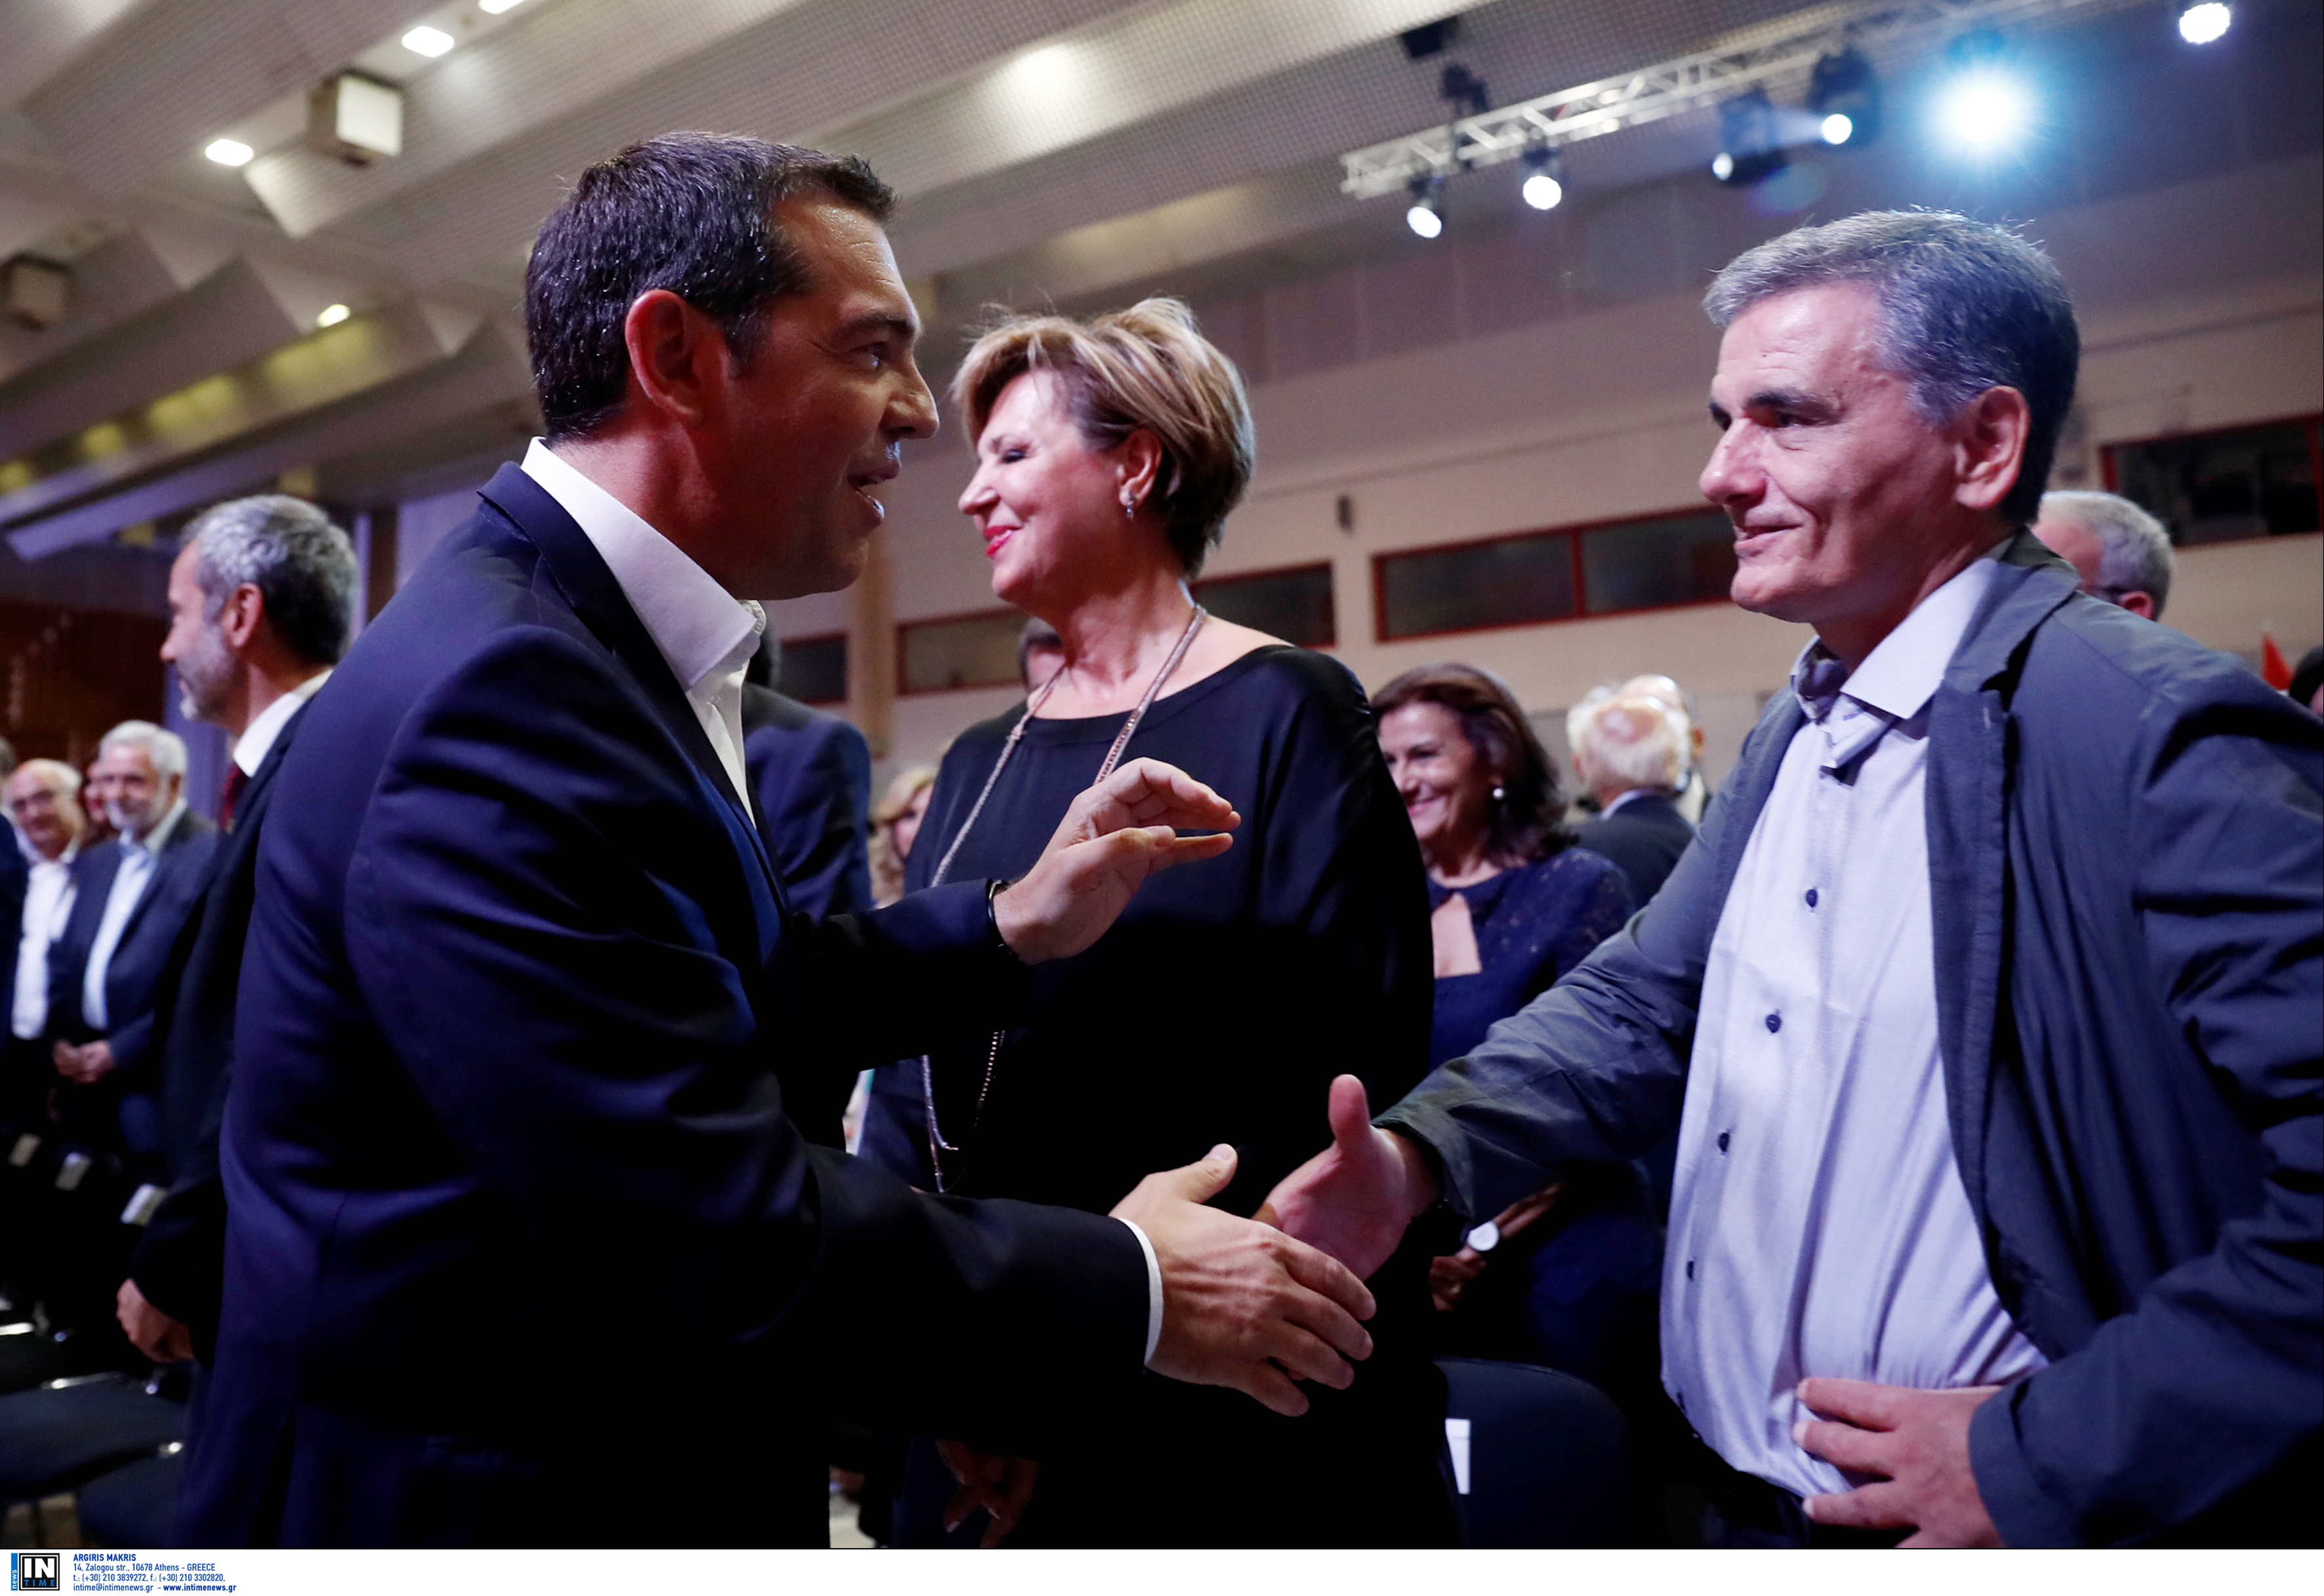 Μια ωραία… ατμόσφαιρα στον ΣΥΡΙΖΑ! “Προεδρικοί” vs “κομματικών” και στη μέση ο Τσίπρας